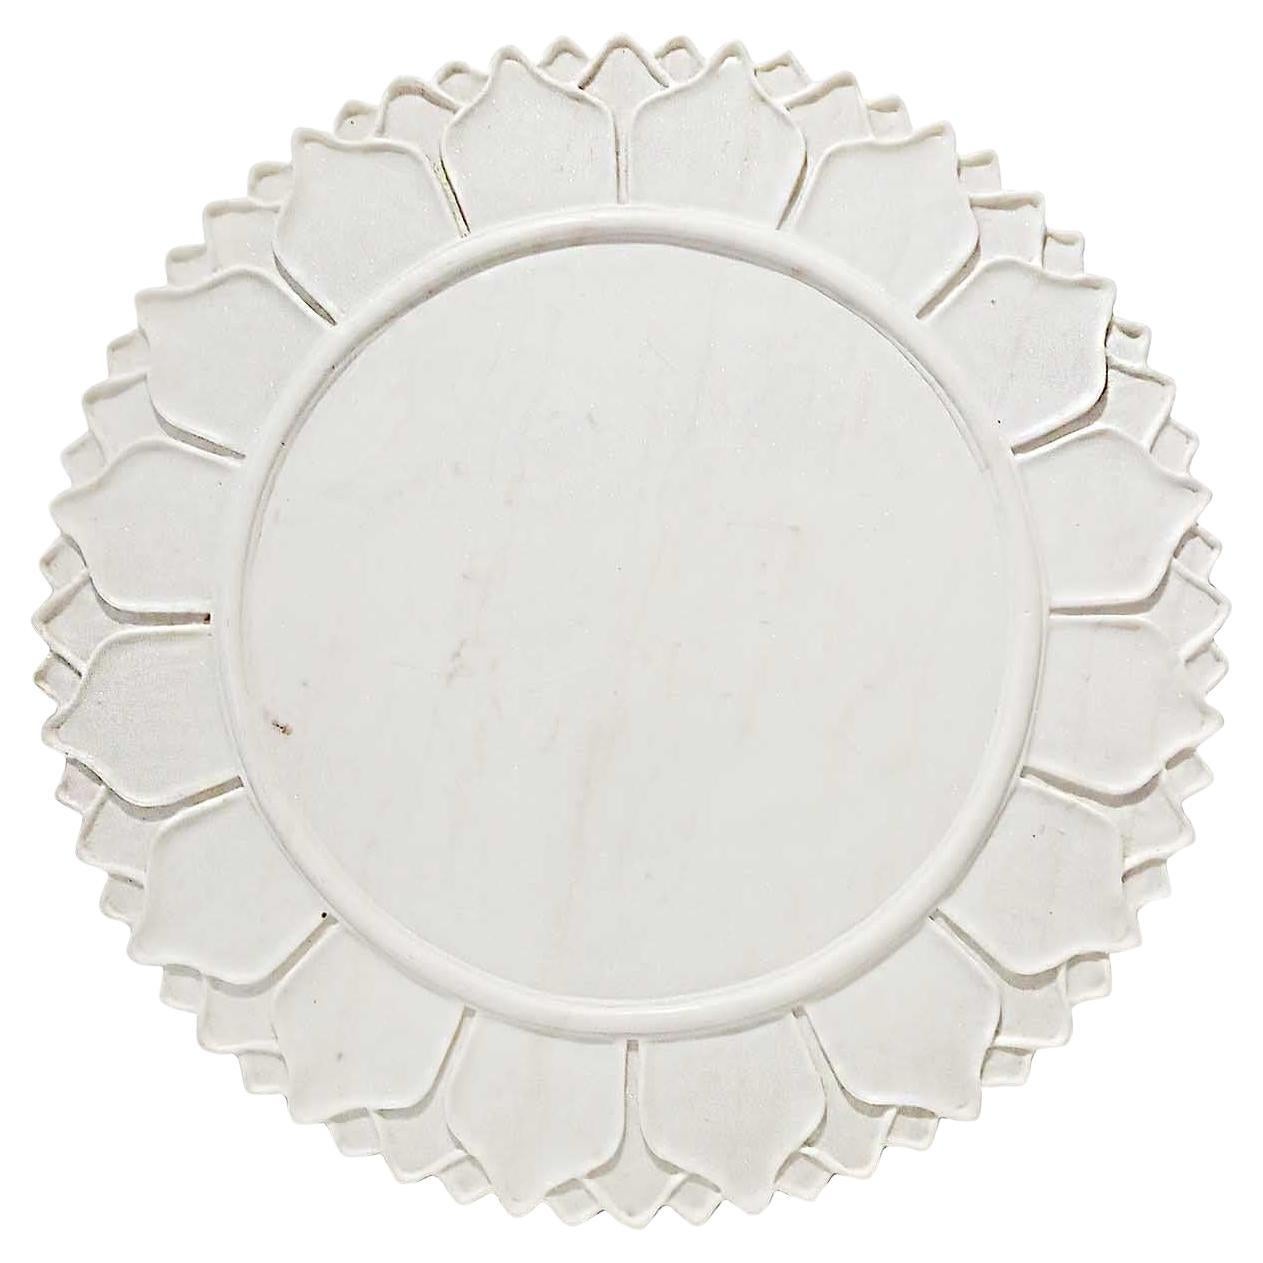 Serveur / Chargeur / Assiette en marbre blanc sculpté à la main